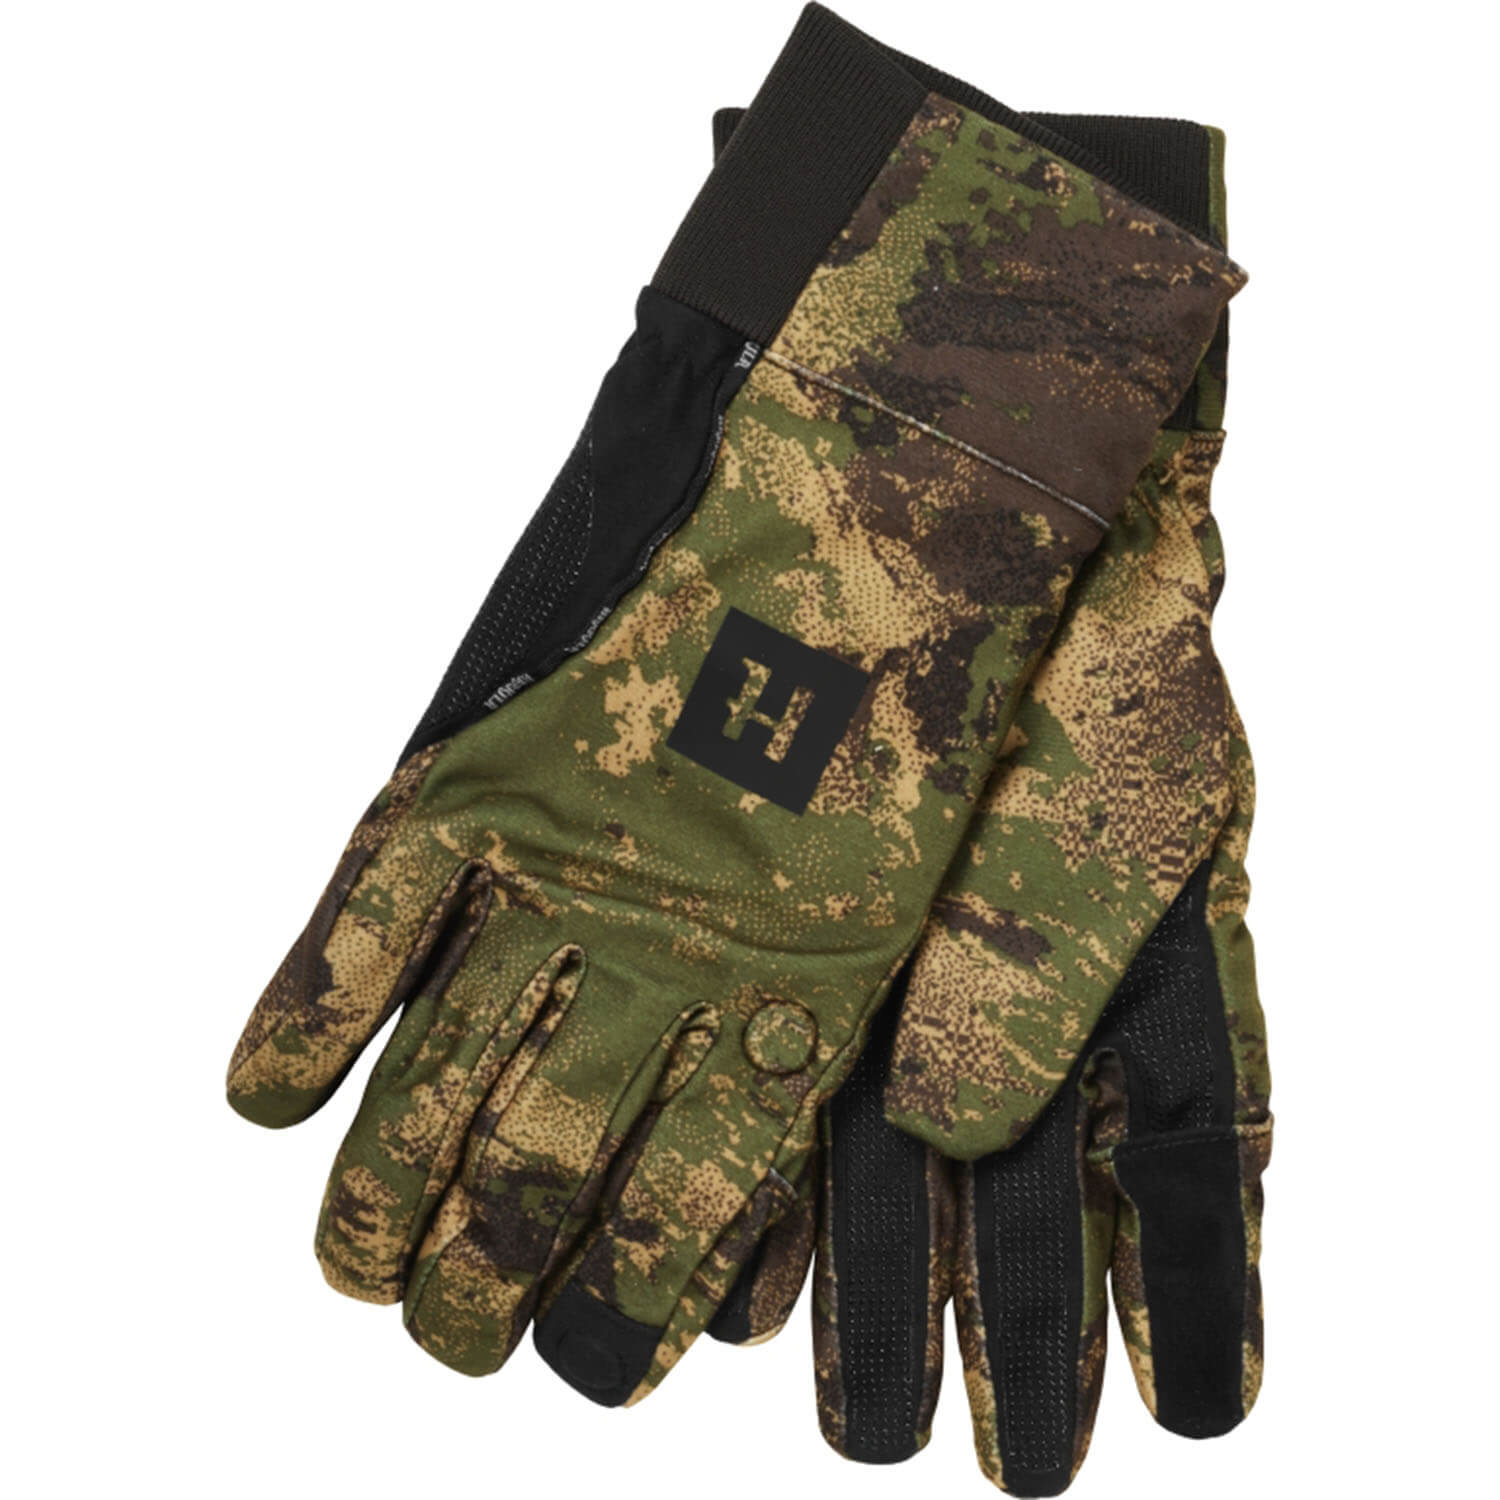 Härkila gloves Deer stalker HWS (AXIS MSP) - Hunting Gloves